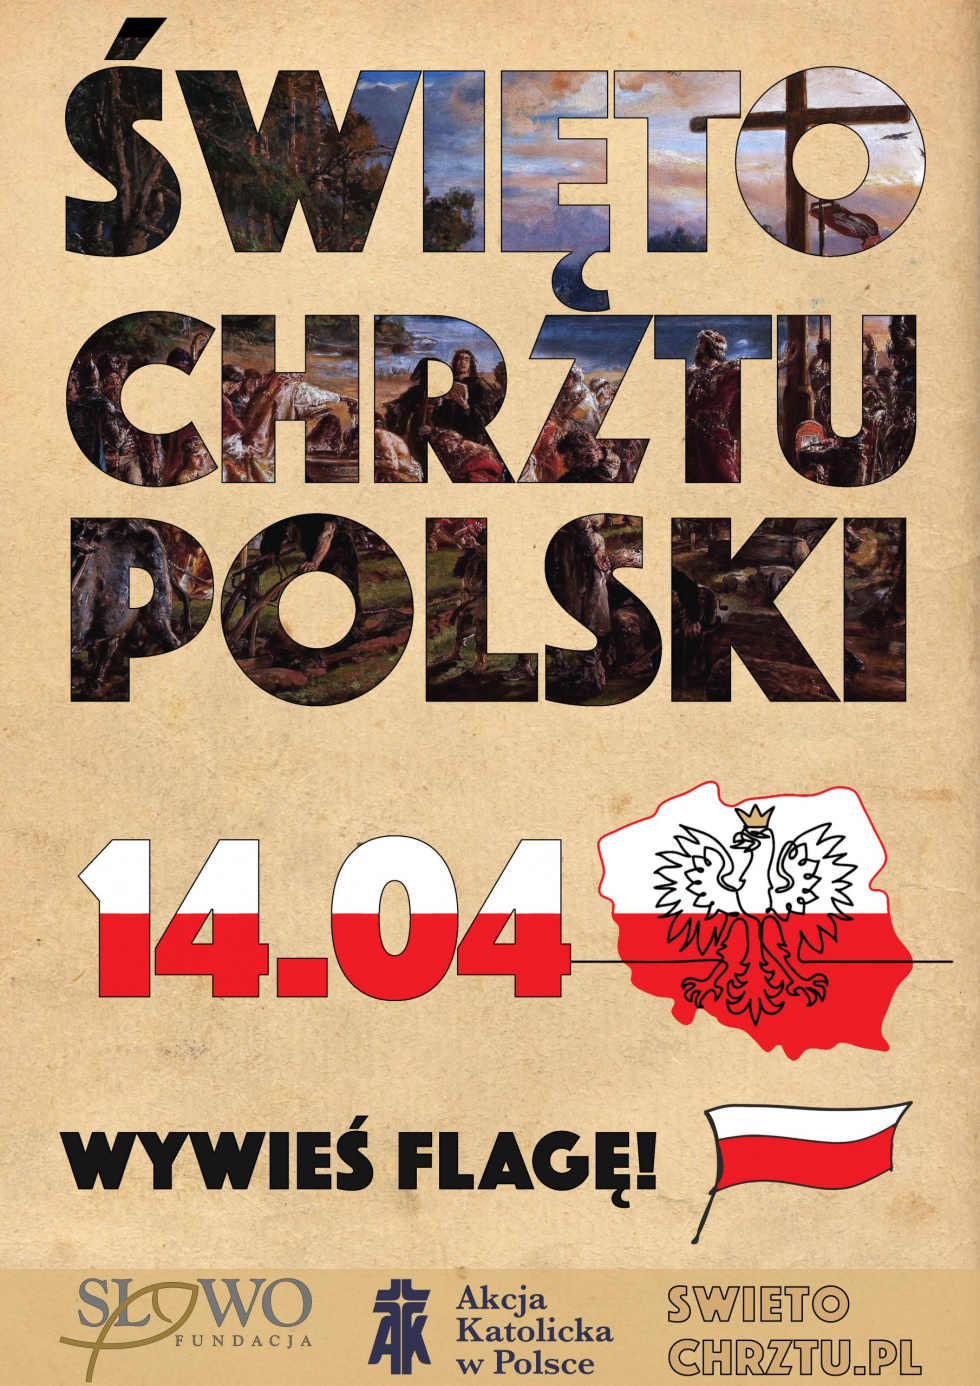 Zapraszamy do świętowania Chrztu Polski przez wywieszenie flagi. 